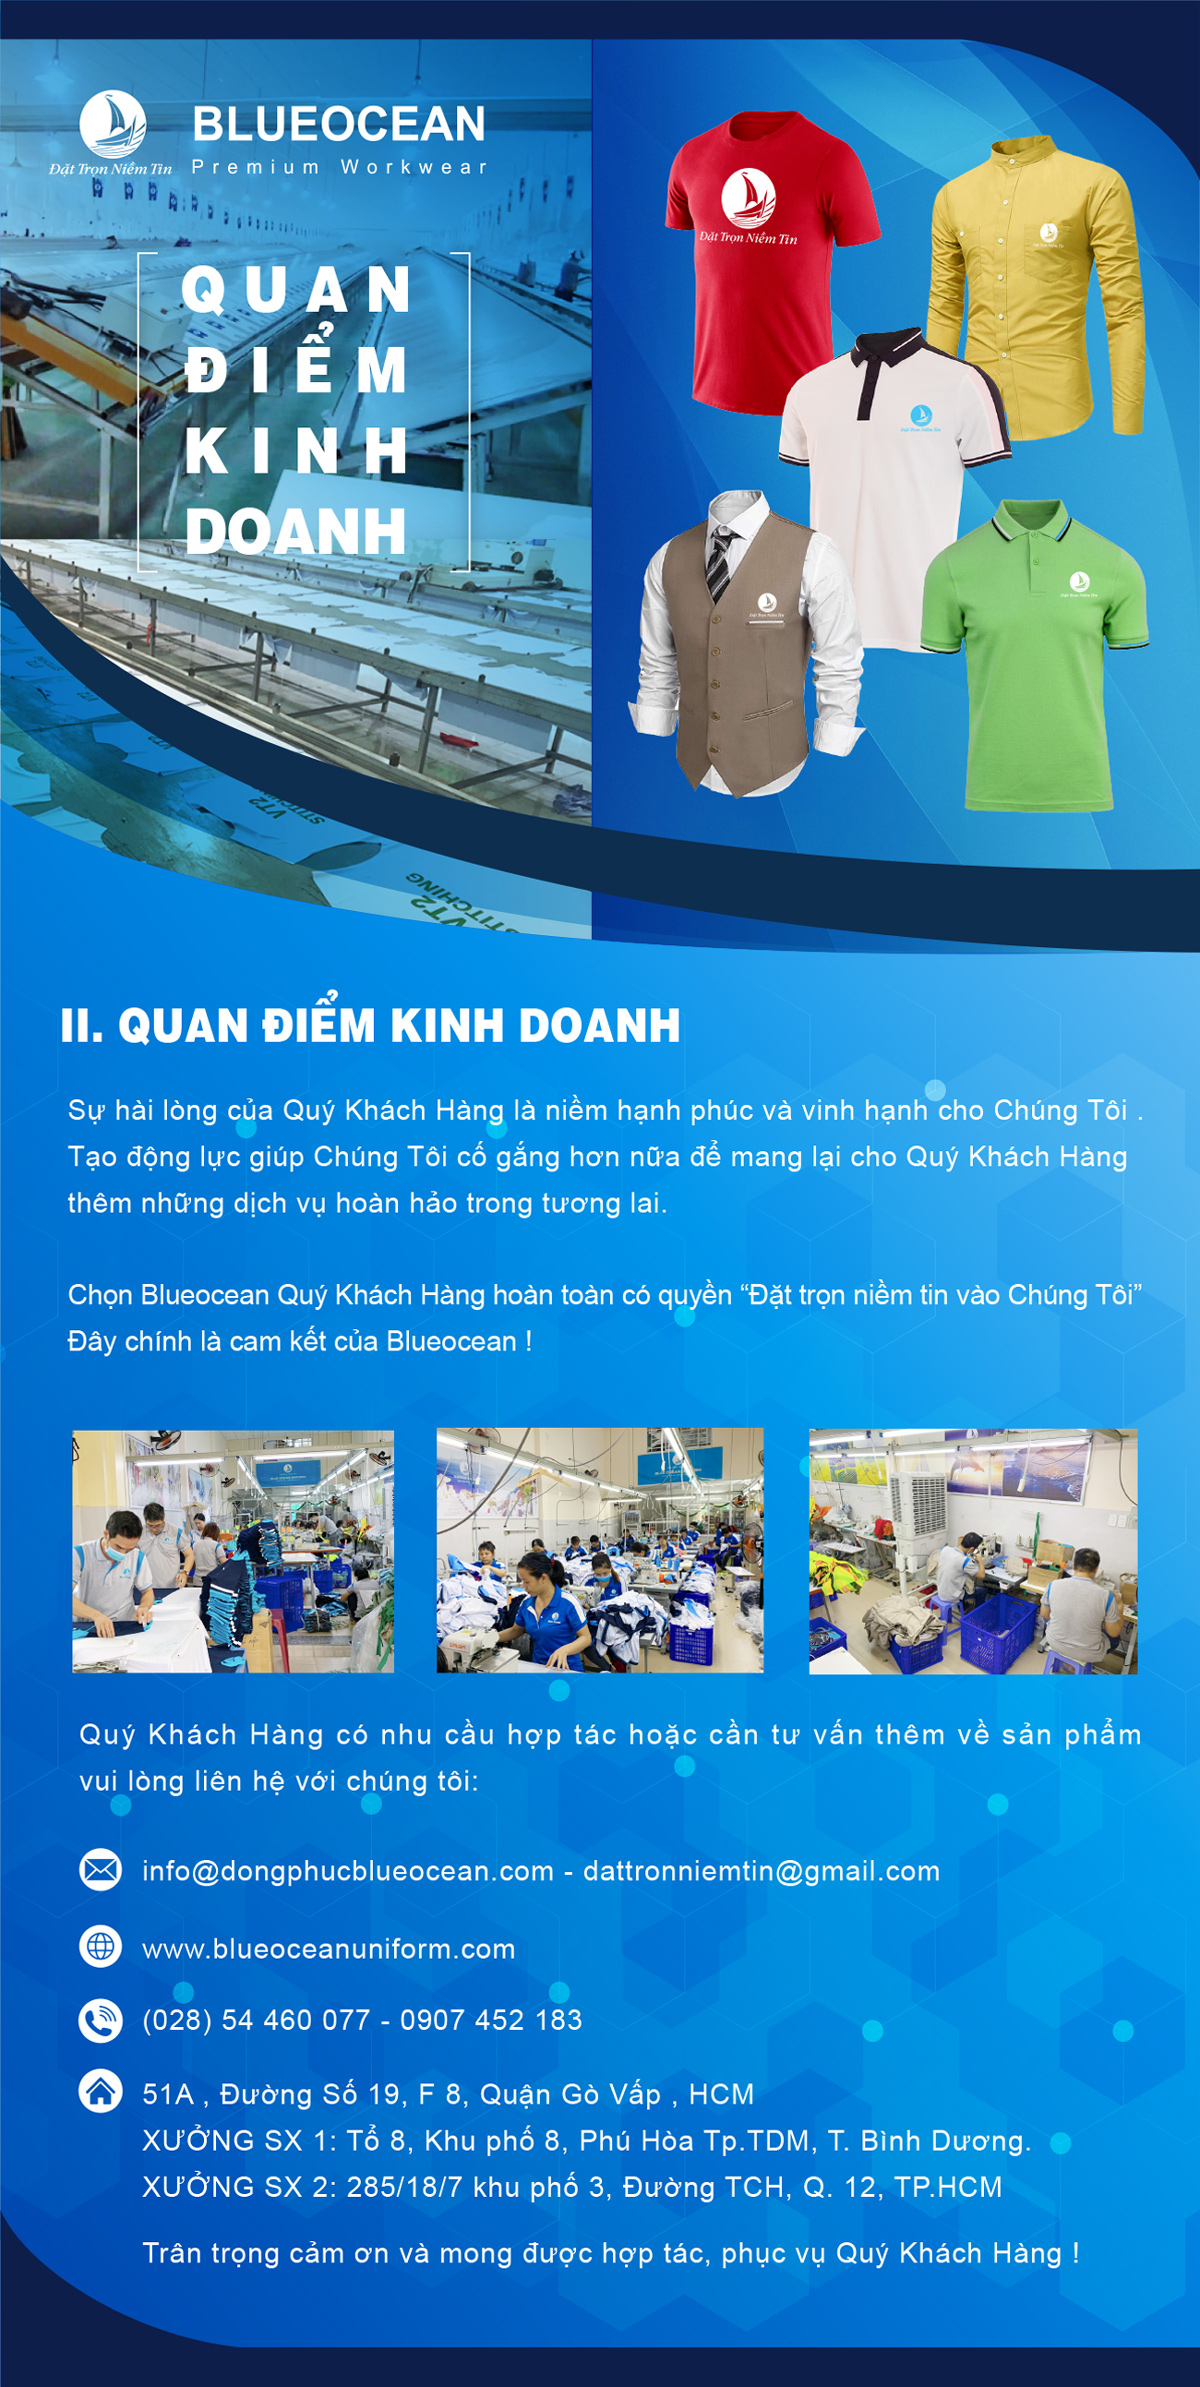 Chính sách kinh doanh của Blue Ocean